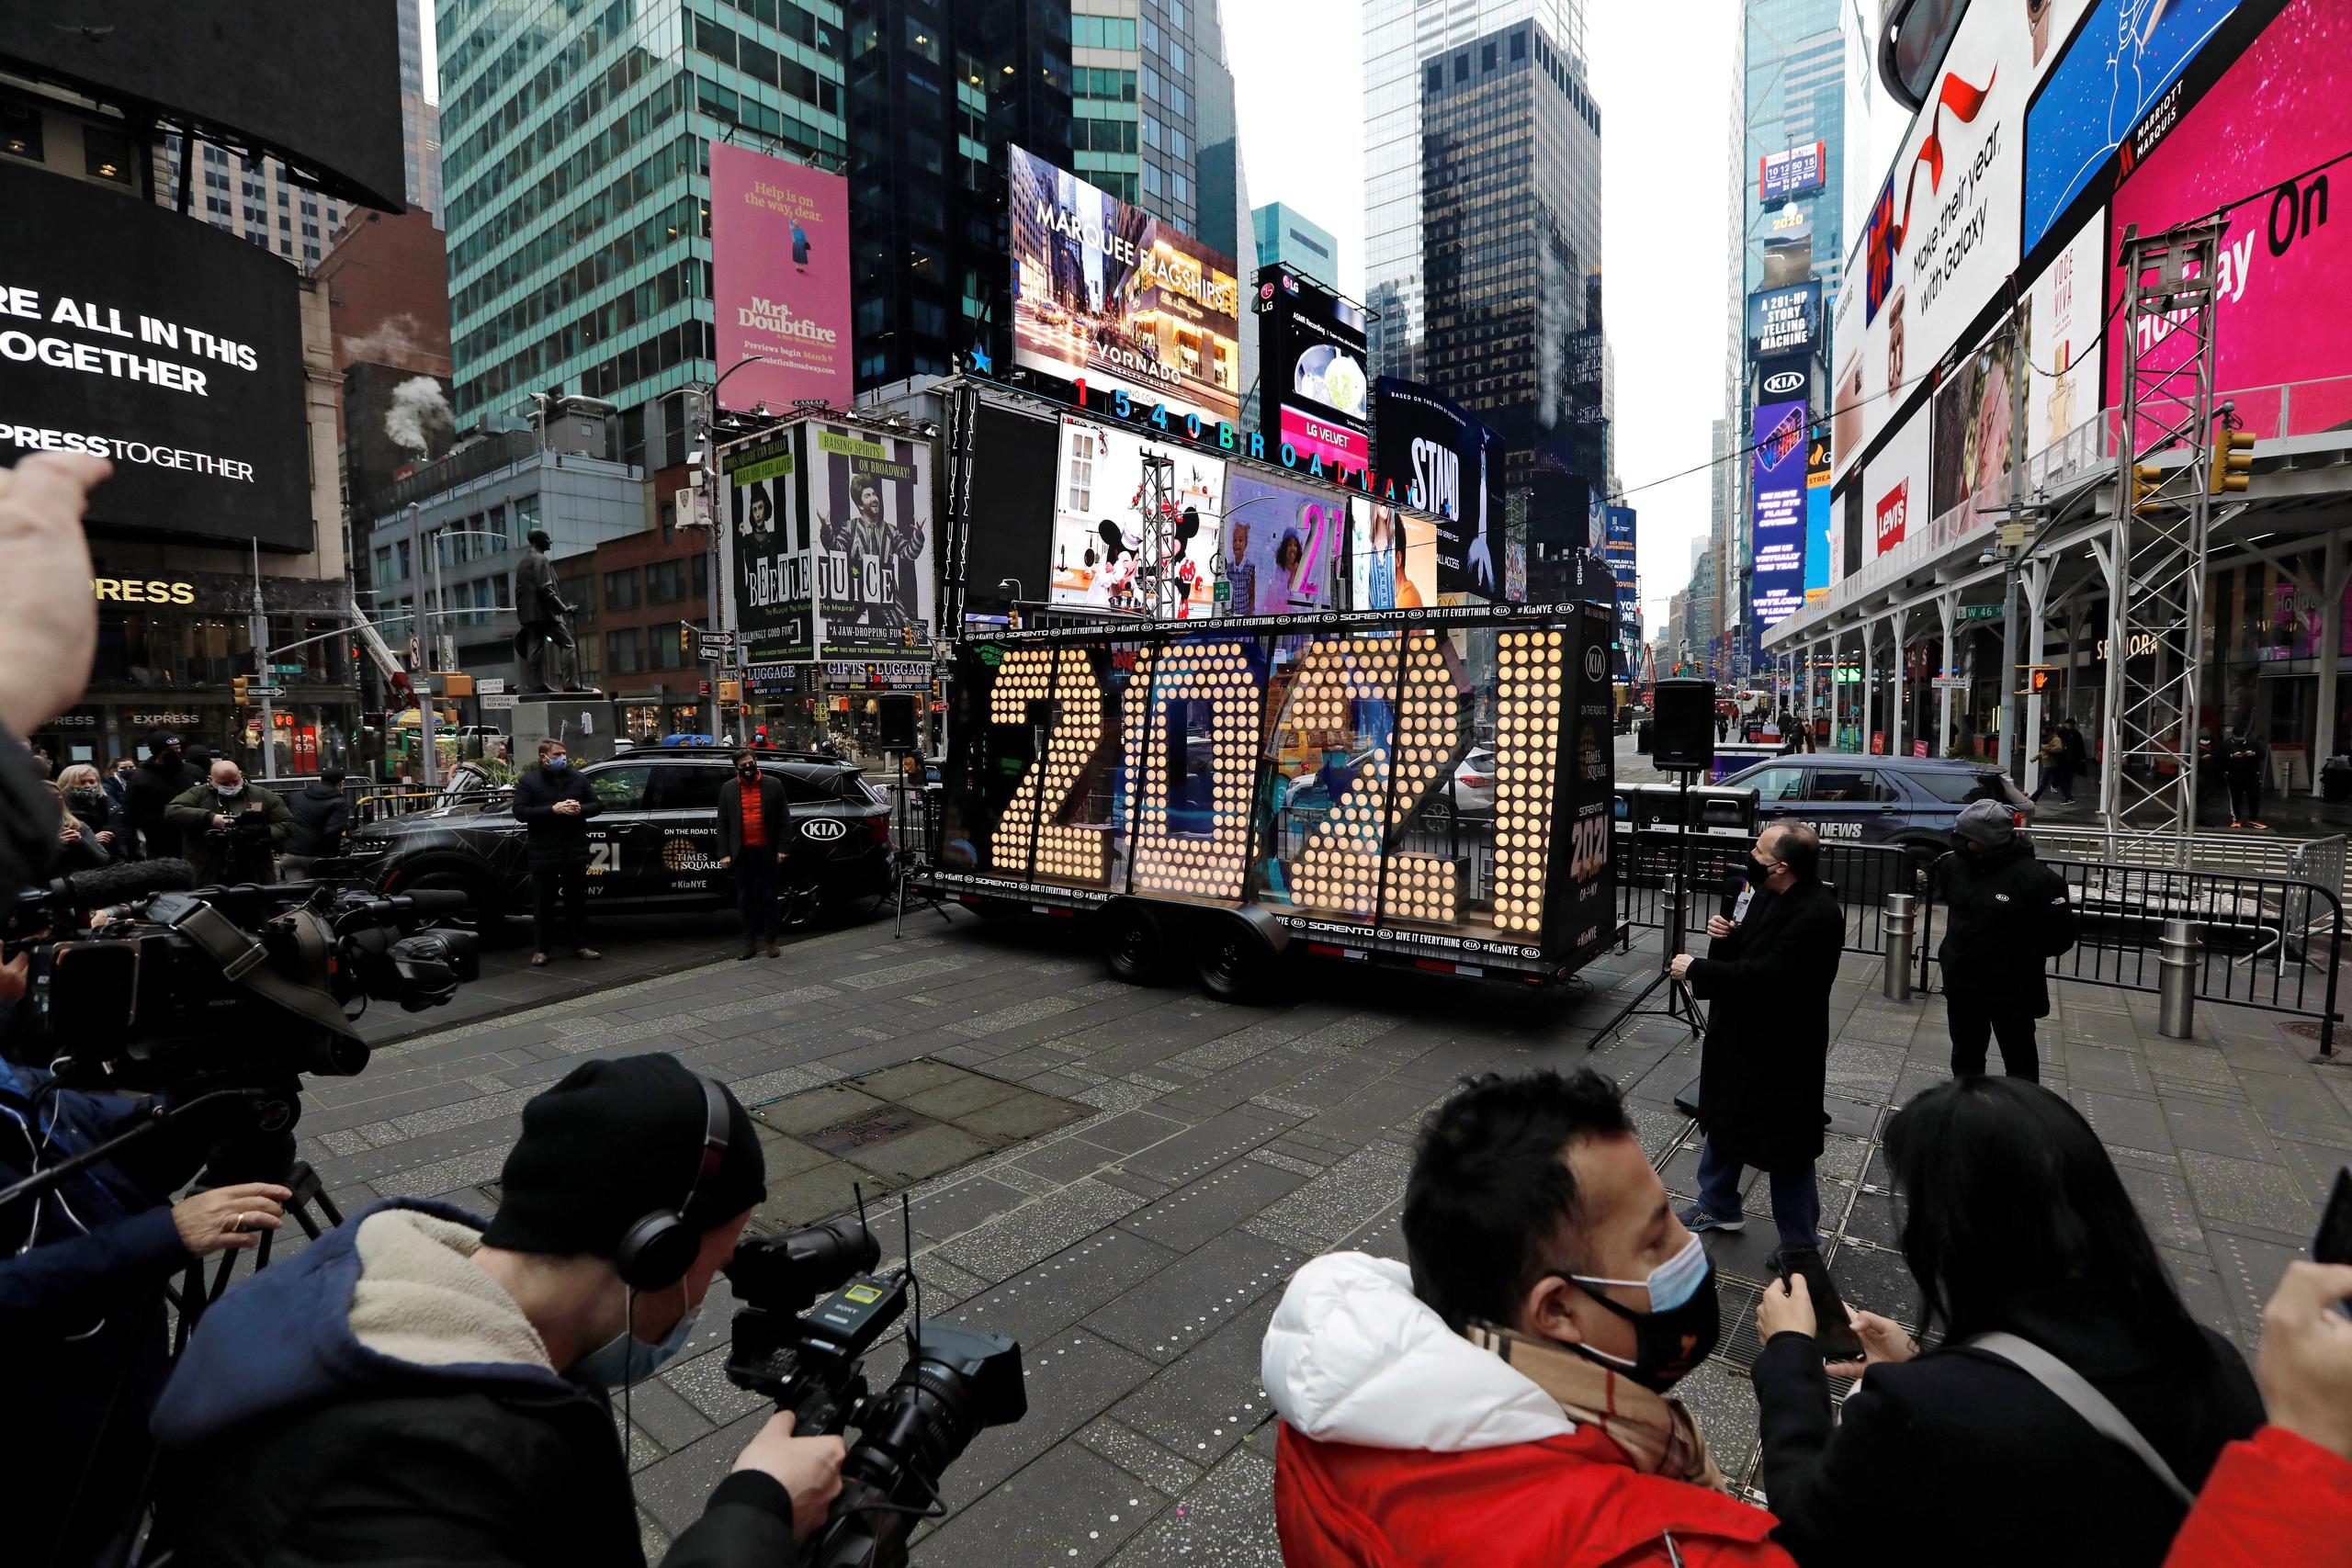 La celebración de Times Square este año se hará apenas sin público, aunque sí habrá actuaciones en vivo.